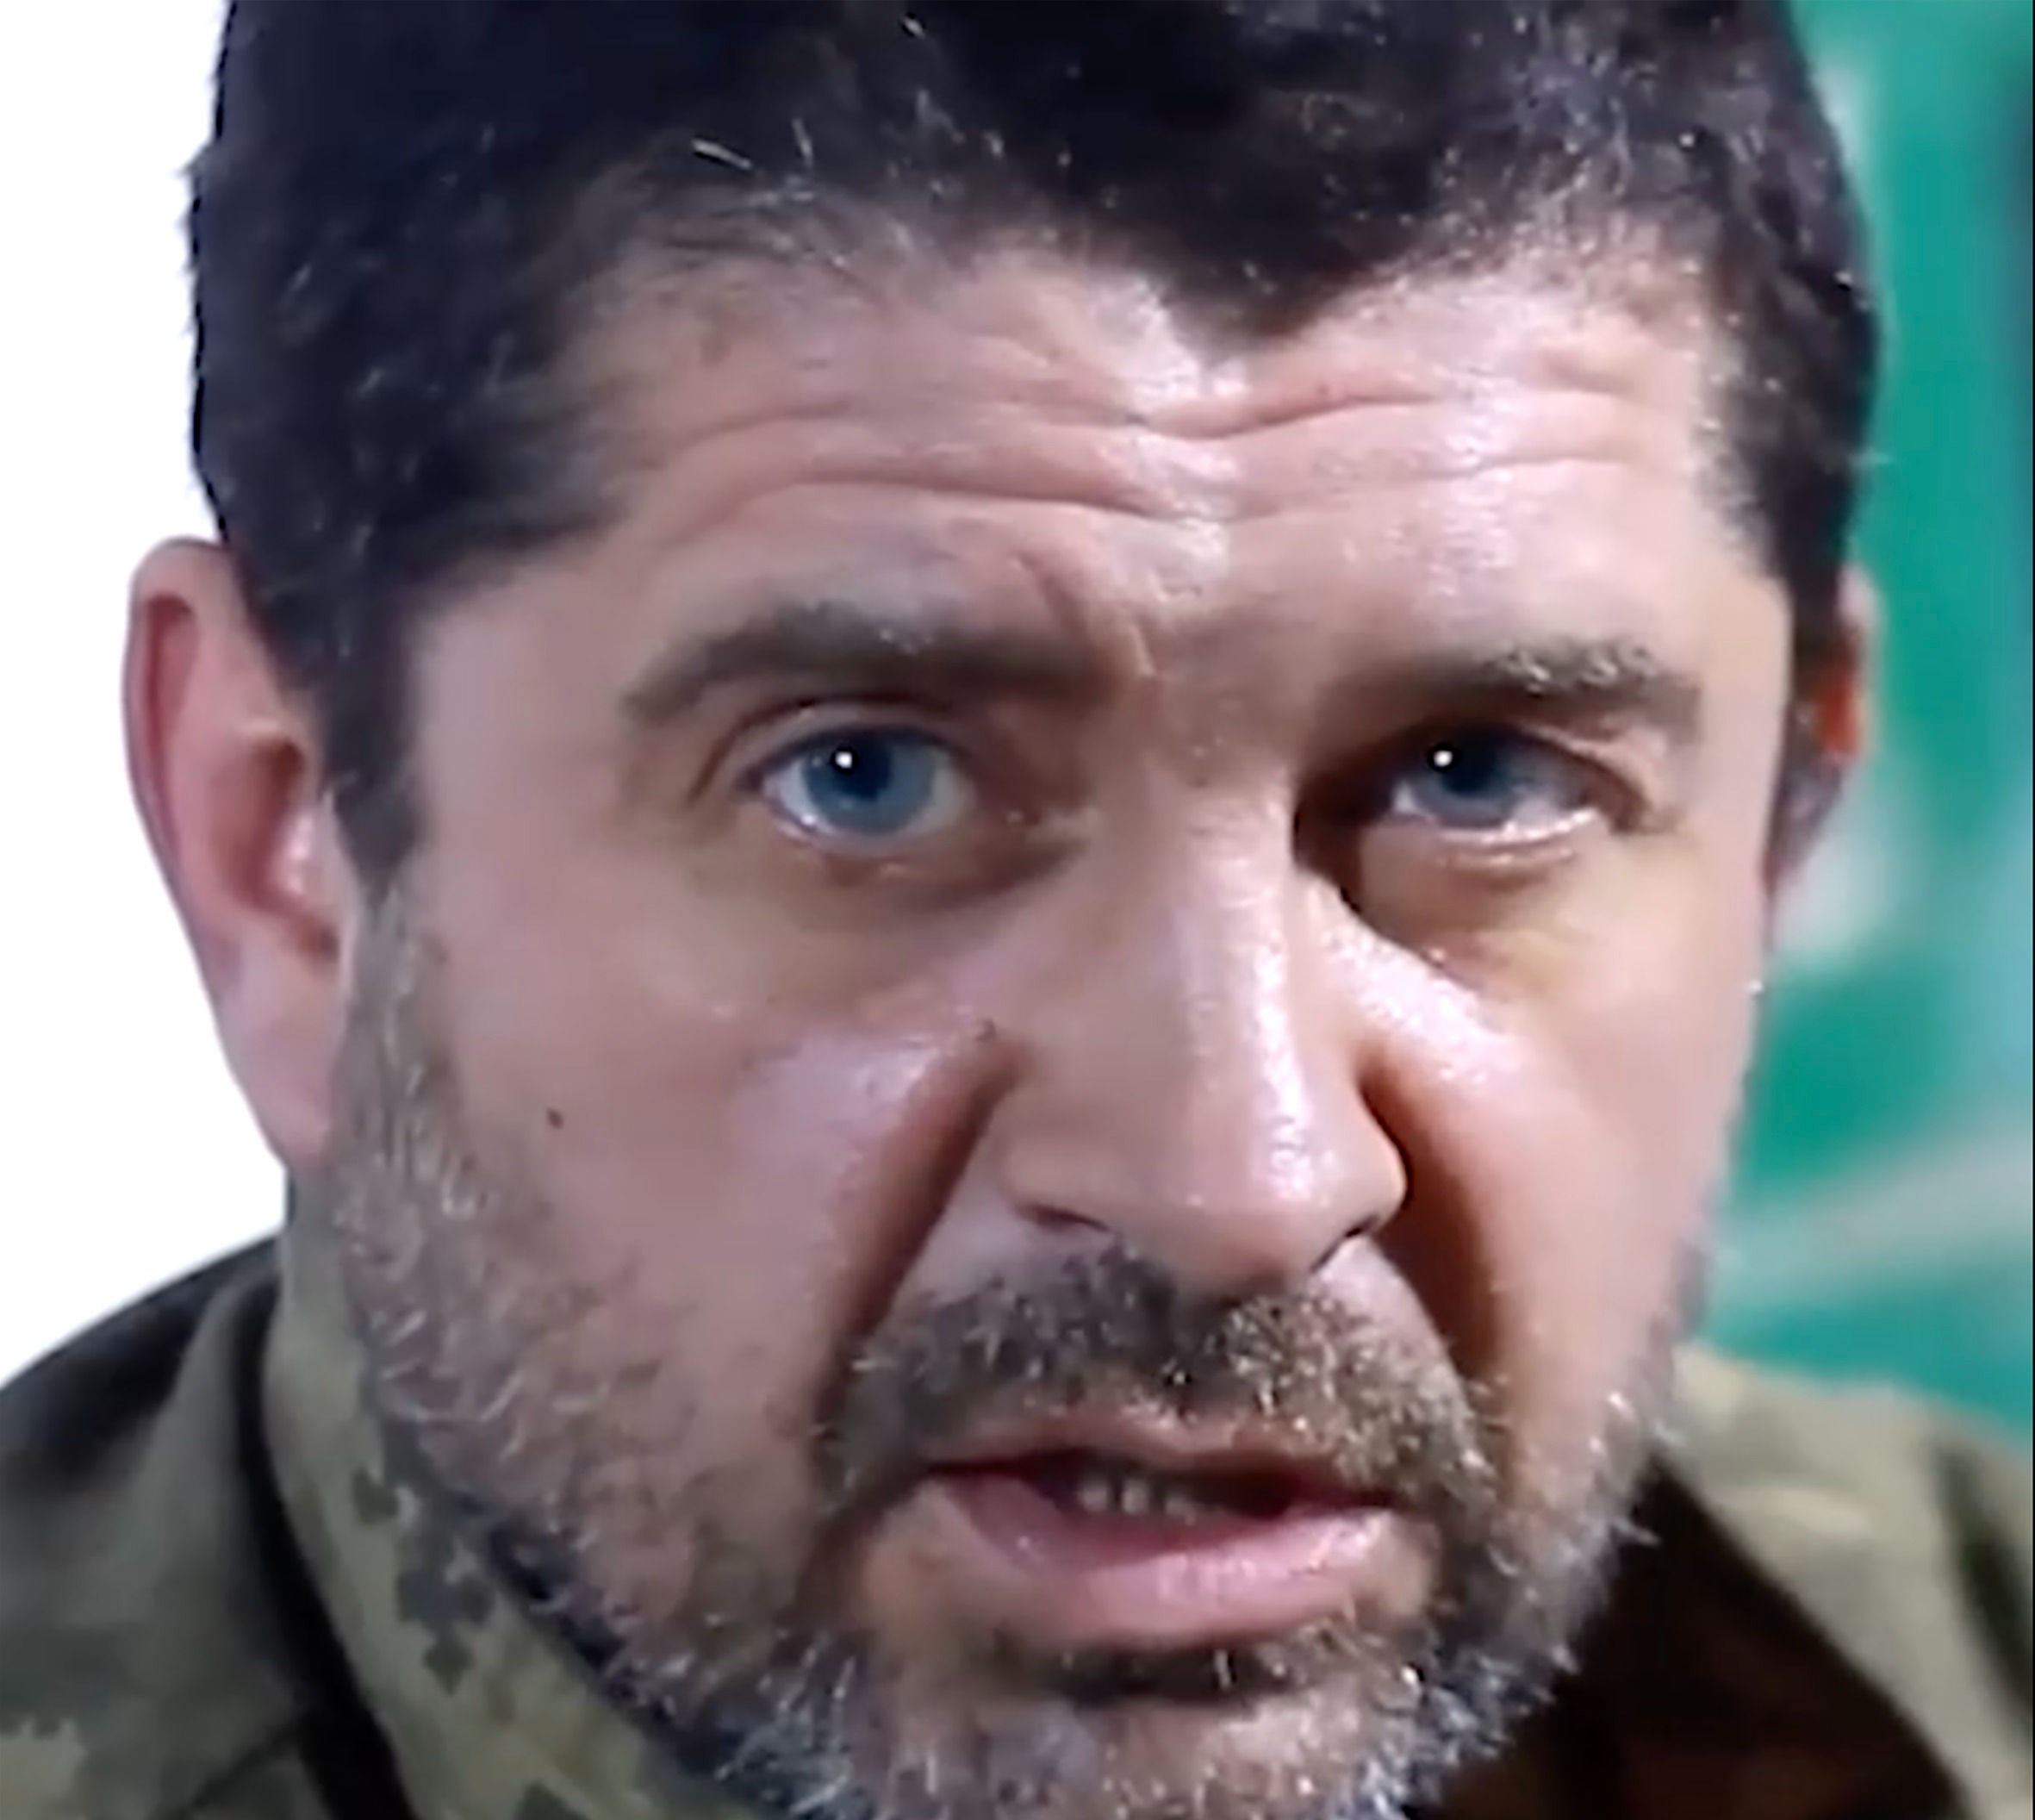 Der ukrainische Kriegsgefangene Konstantin Danilchenko, 45, soll laut russischem Staatsfernsehen auf der abgestürzten Il-76 gewesen sein